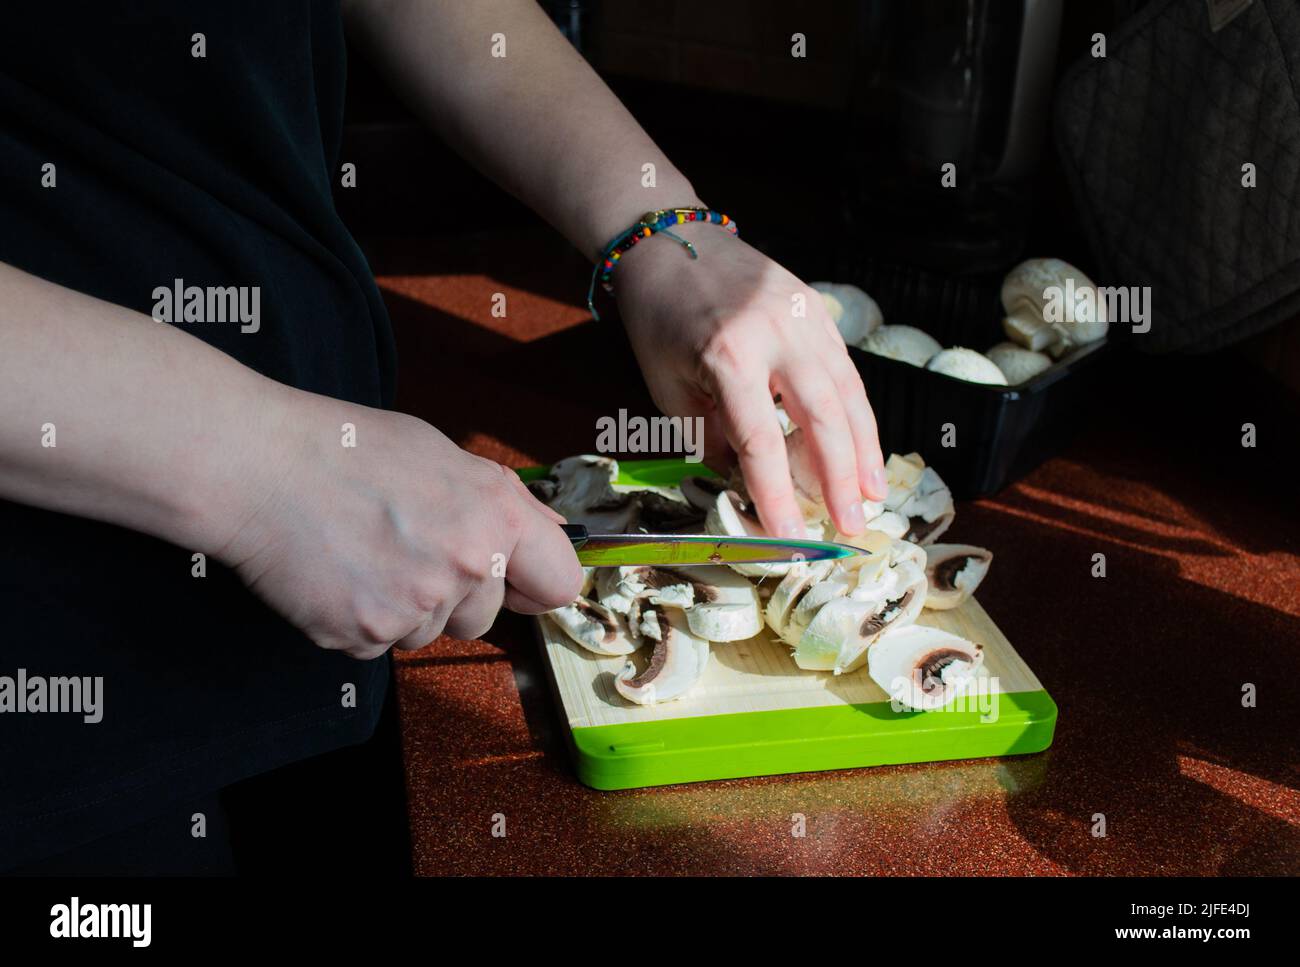 Primo piano delle mani con funghi freschi a fette su un tagliere. Cucina vegetariana fatta in casa. Luce solare dalla finestra, ombre sul tavolo. Foto Stock